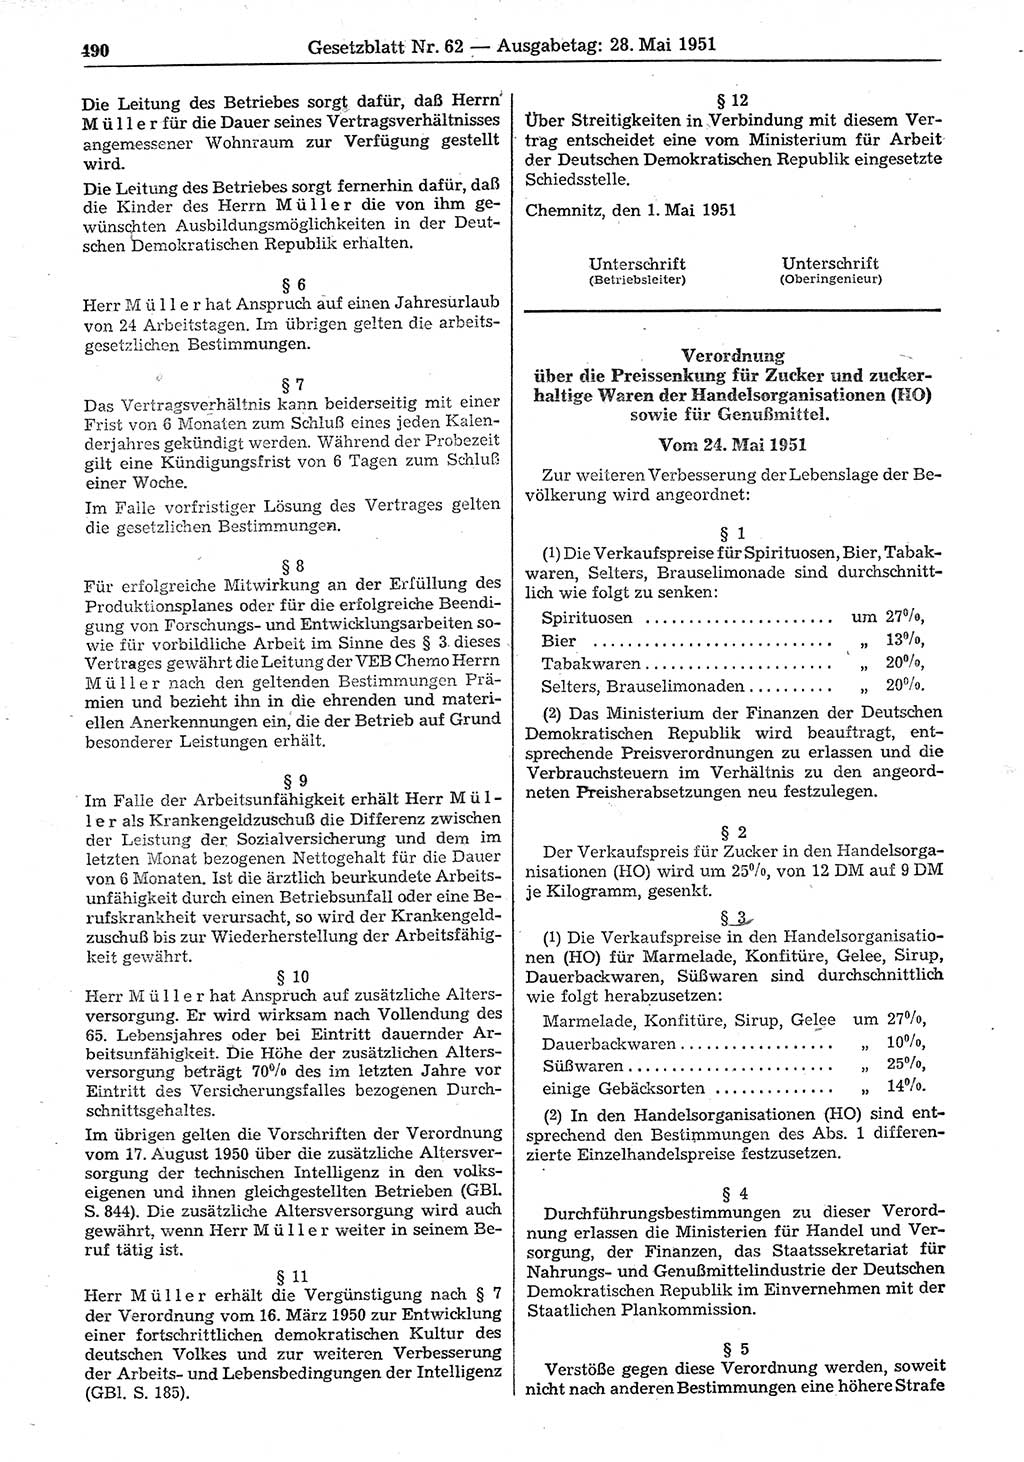 Gesetzblatt (GBl.) der Deutschen Demokratischen Republik (DDR) 1951, Seite 490 (GBl. DDR 1951, S. 490)